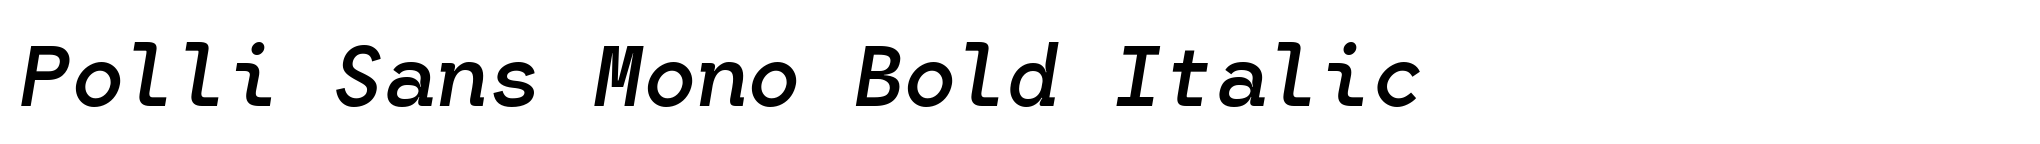 Polli Sans Mono Bold Italic image